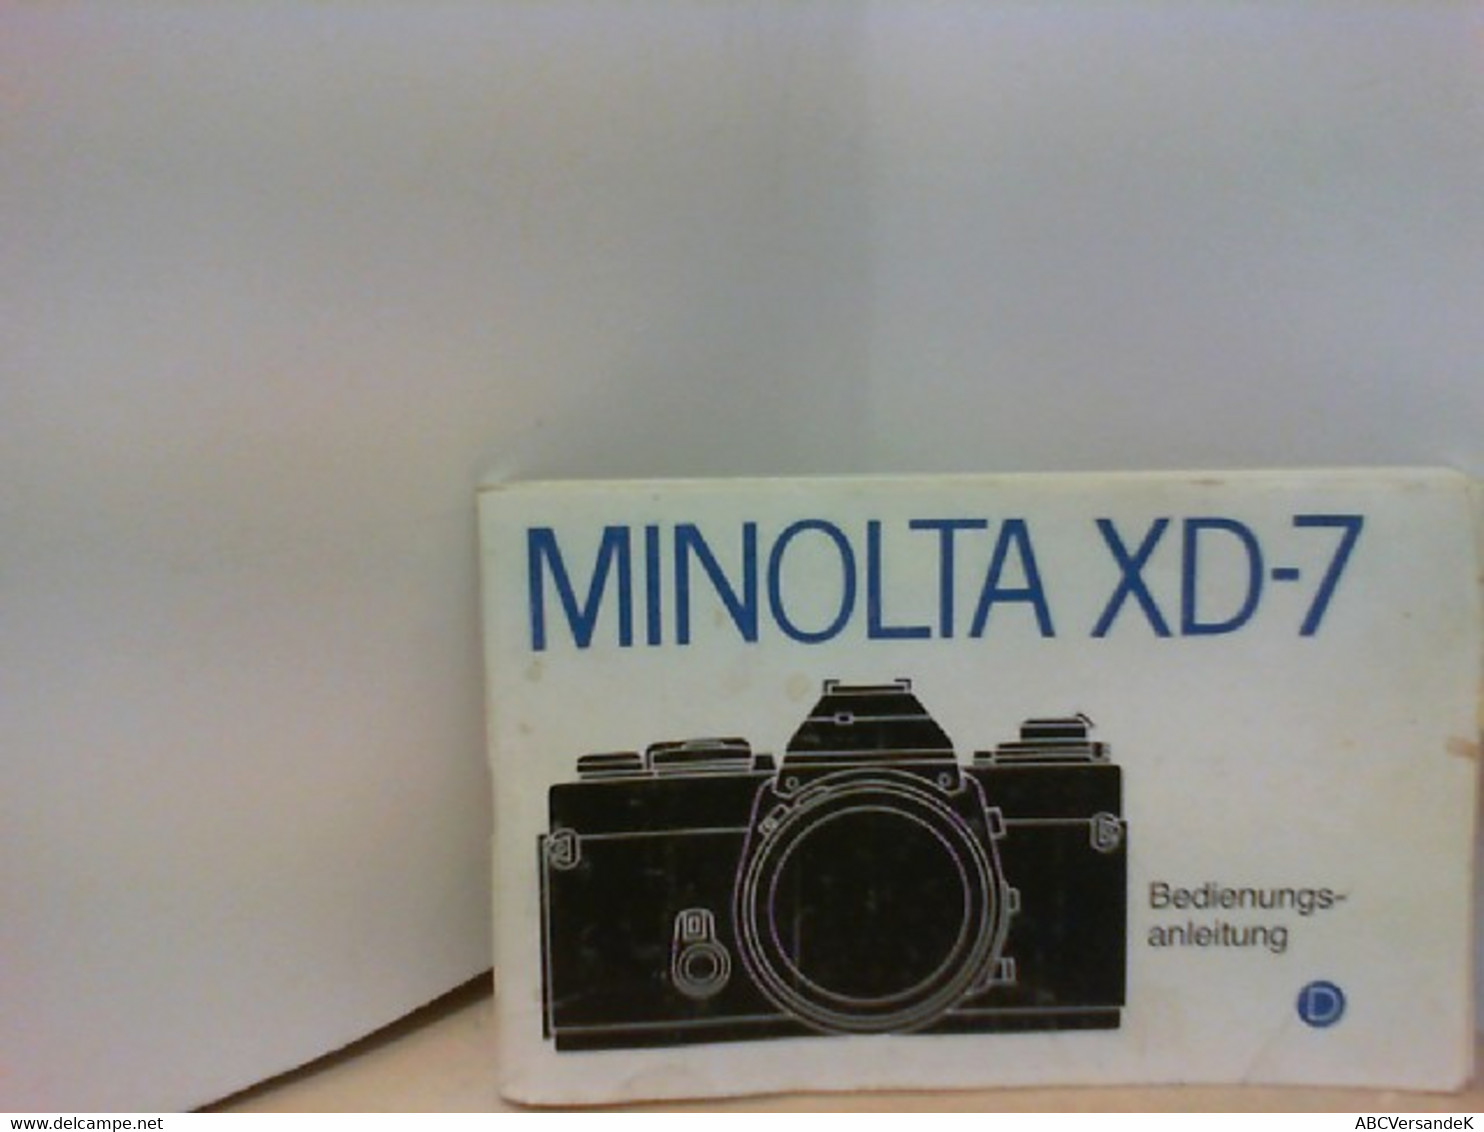 MINOLTA XD - 7 Bedienungsanleitung - Fotografía